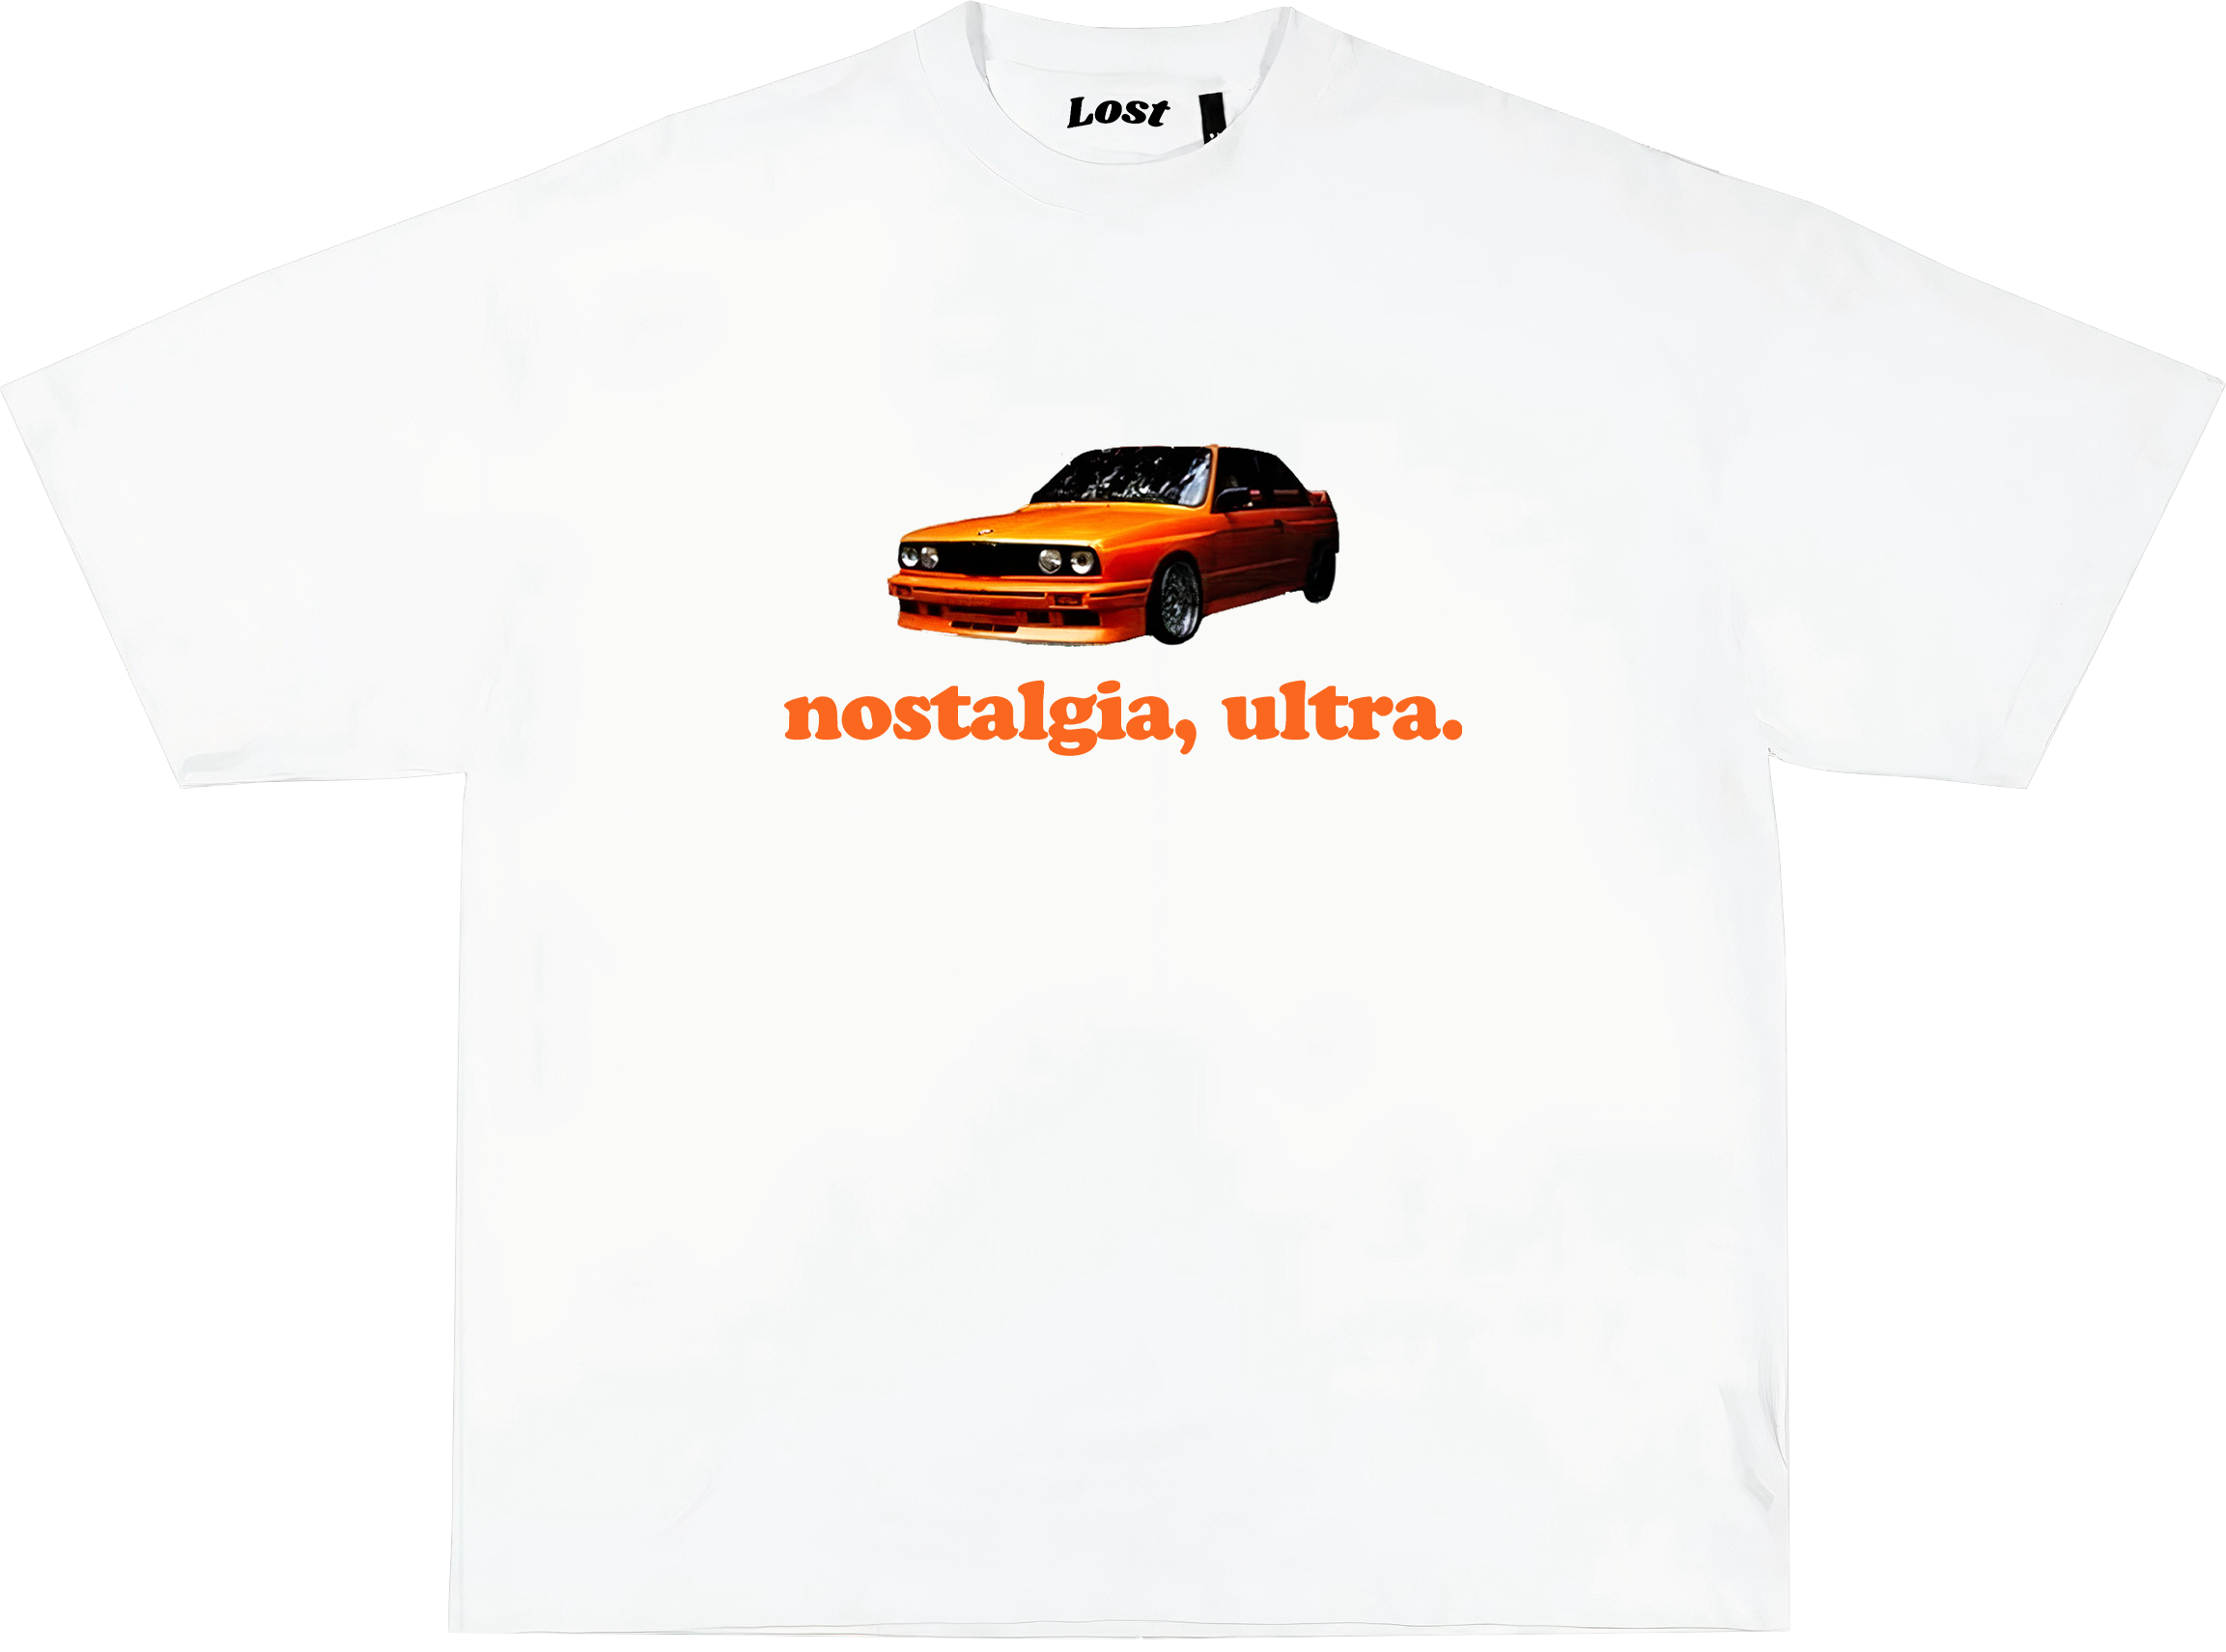 FRANK OCEAN "nostalgia ultra" Oversized T-shirt